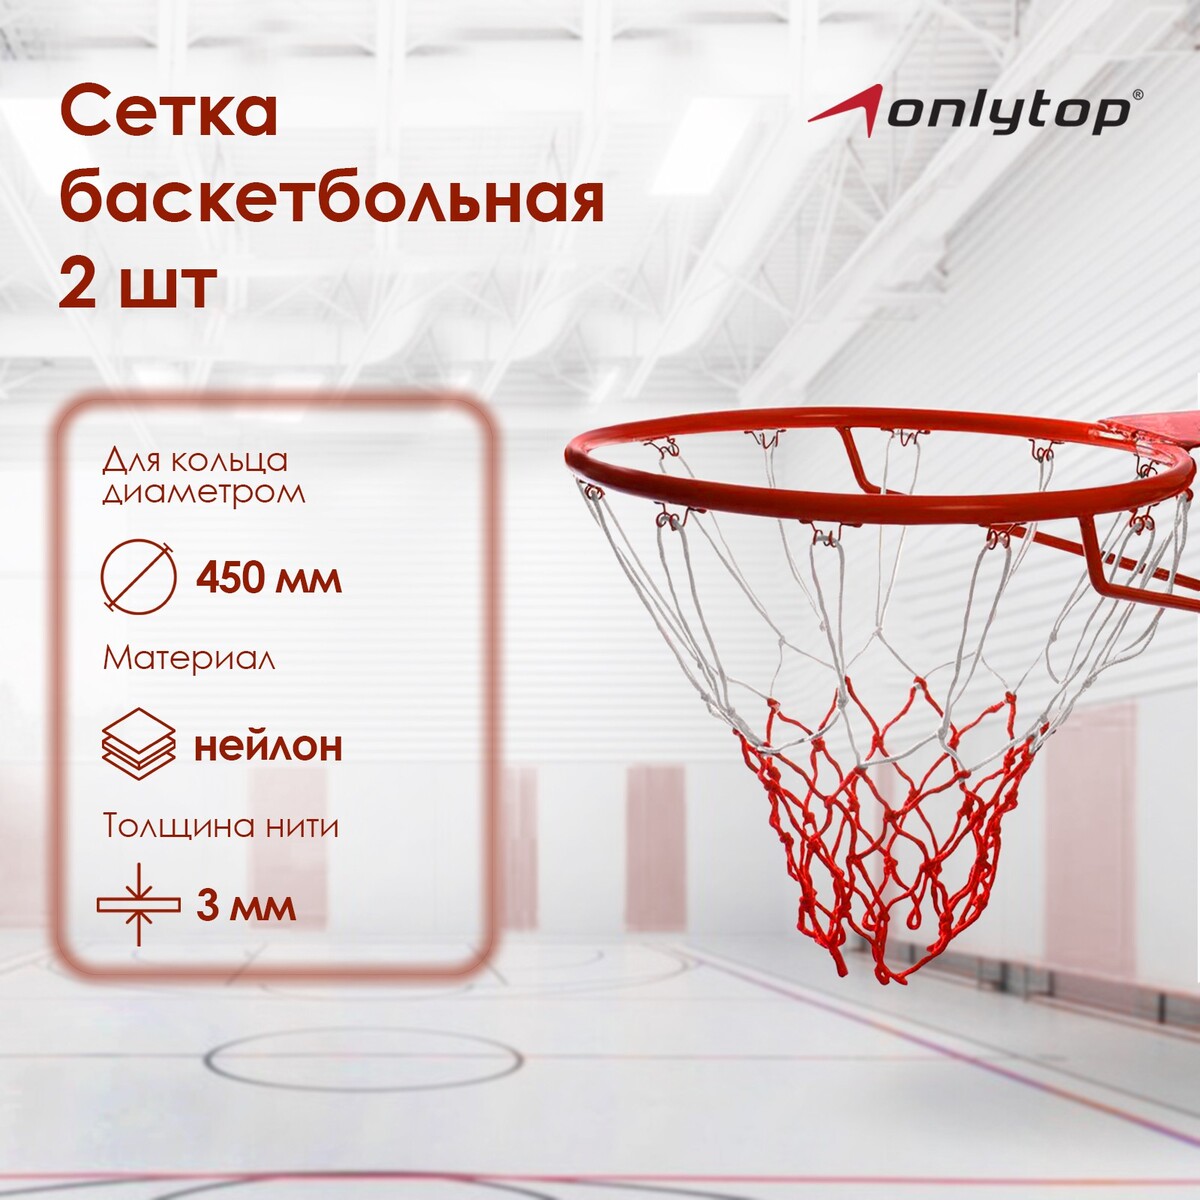 Сетка баскетбольная onlytop, 50 см, нить 3 мм, 2 шт. сетка для баскетбольного кольца dfc n s1